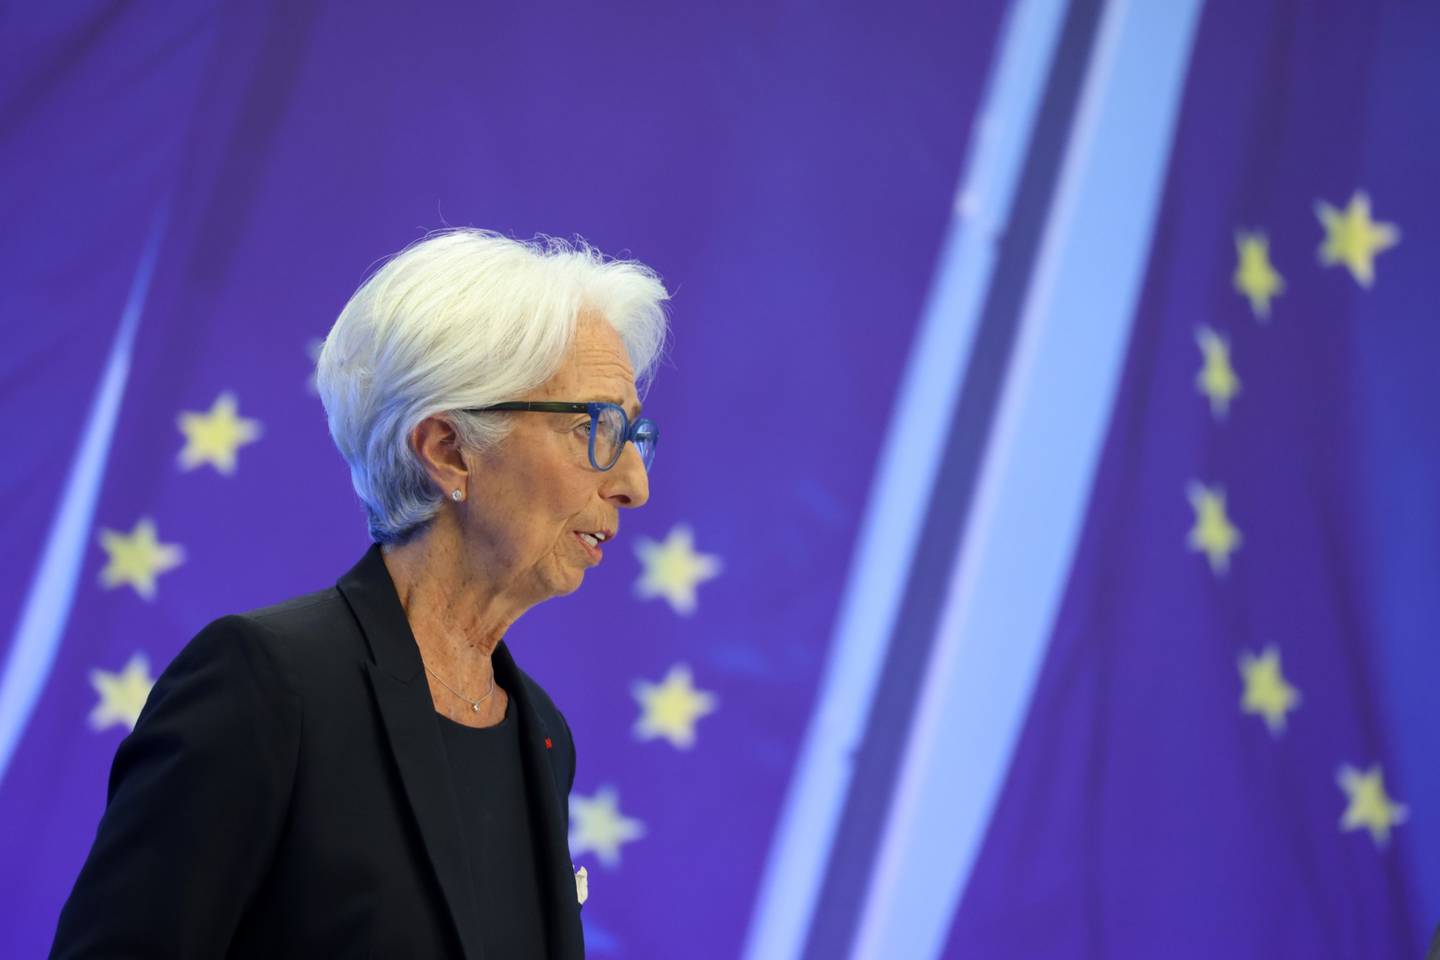 Christine Lagarde, presidenta del Banco Central Europeo (BCE), durante una rueda de prensa en Fráncfort, Alemania, el jueves 21 de julio de 2022. El BCE subió su tipo de interés clave en 50 puntos básicos, el primer aumento en 11 años y el mayor desde el año 2000, ya que se enfrenta a la creciente inflación, aunque los riesgos de recesión aumentan. Fotógrafo: Alex Kraus/Bloomberg